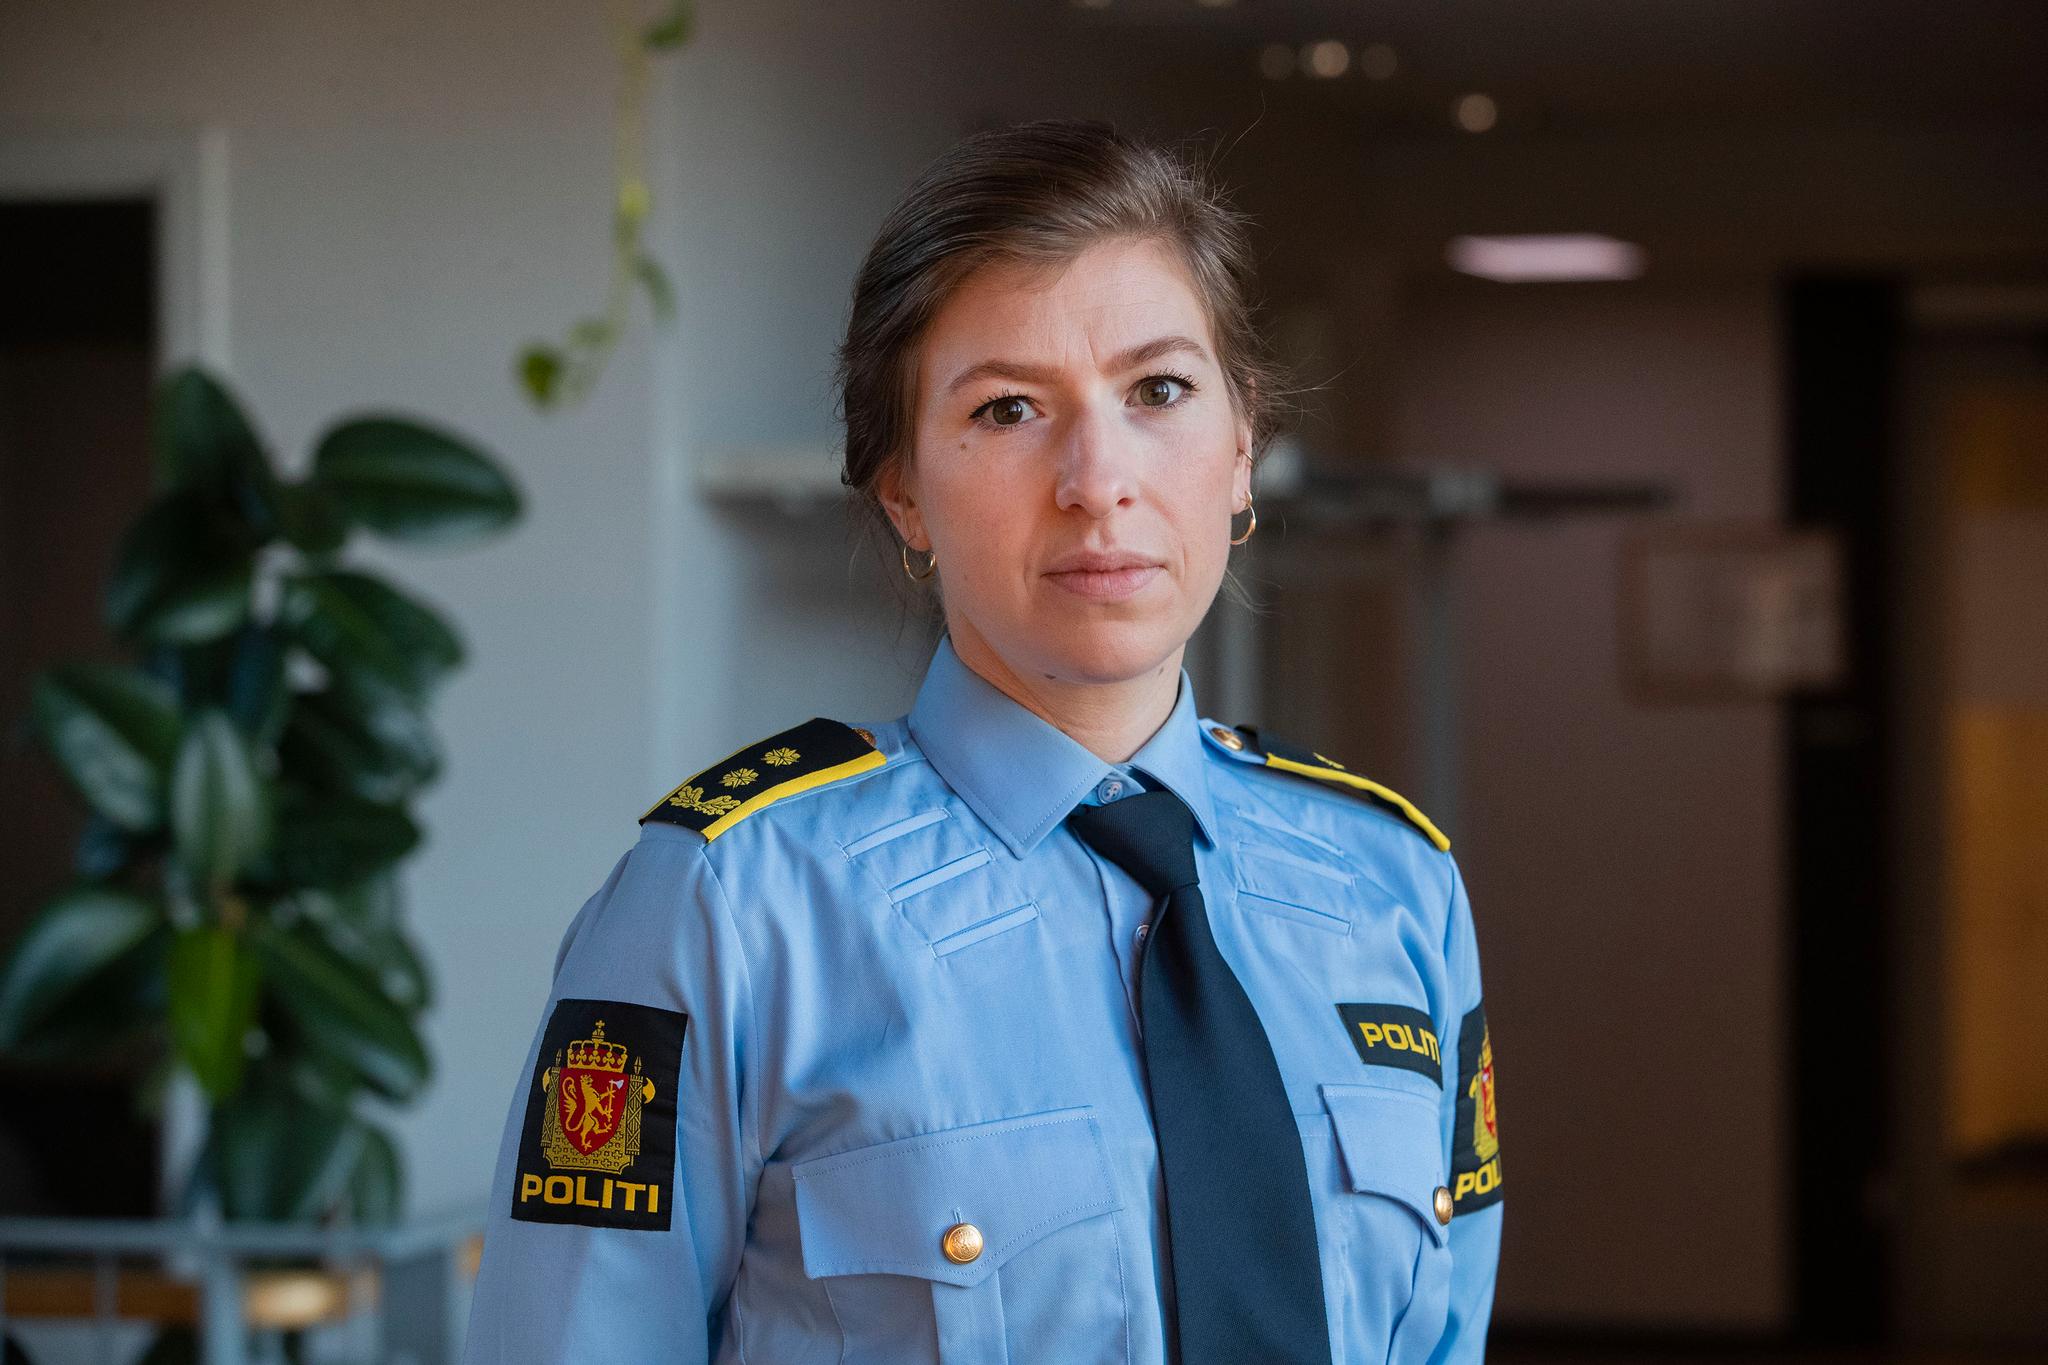 Politiadvokat Åsta Elden er påtaleansvarlig for saken.